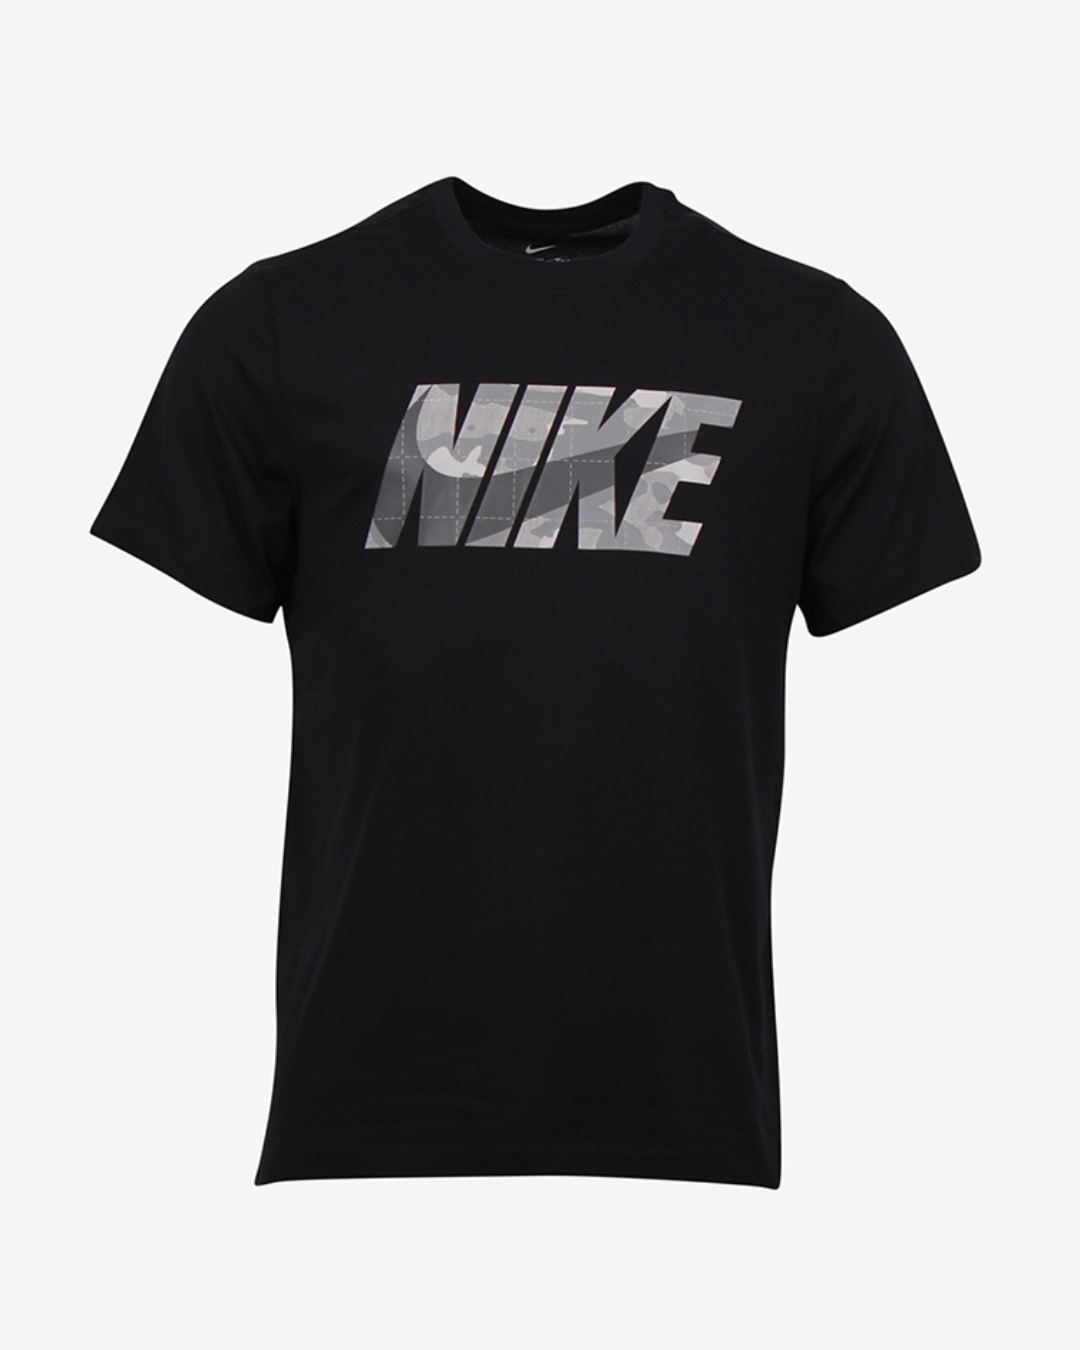 Nike Dri FIT camo t-shirt - Sort - Str. M - Modish.dk